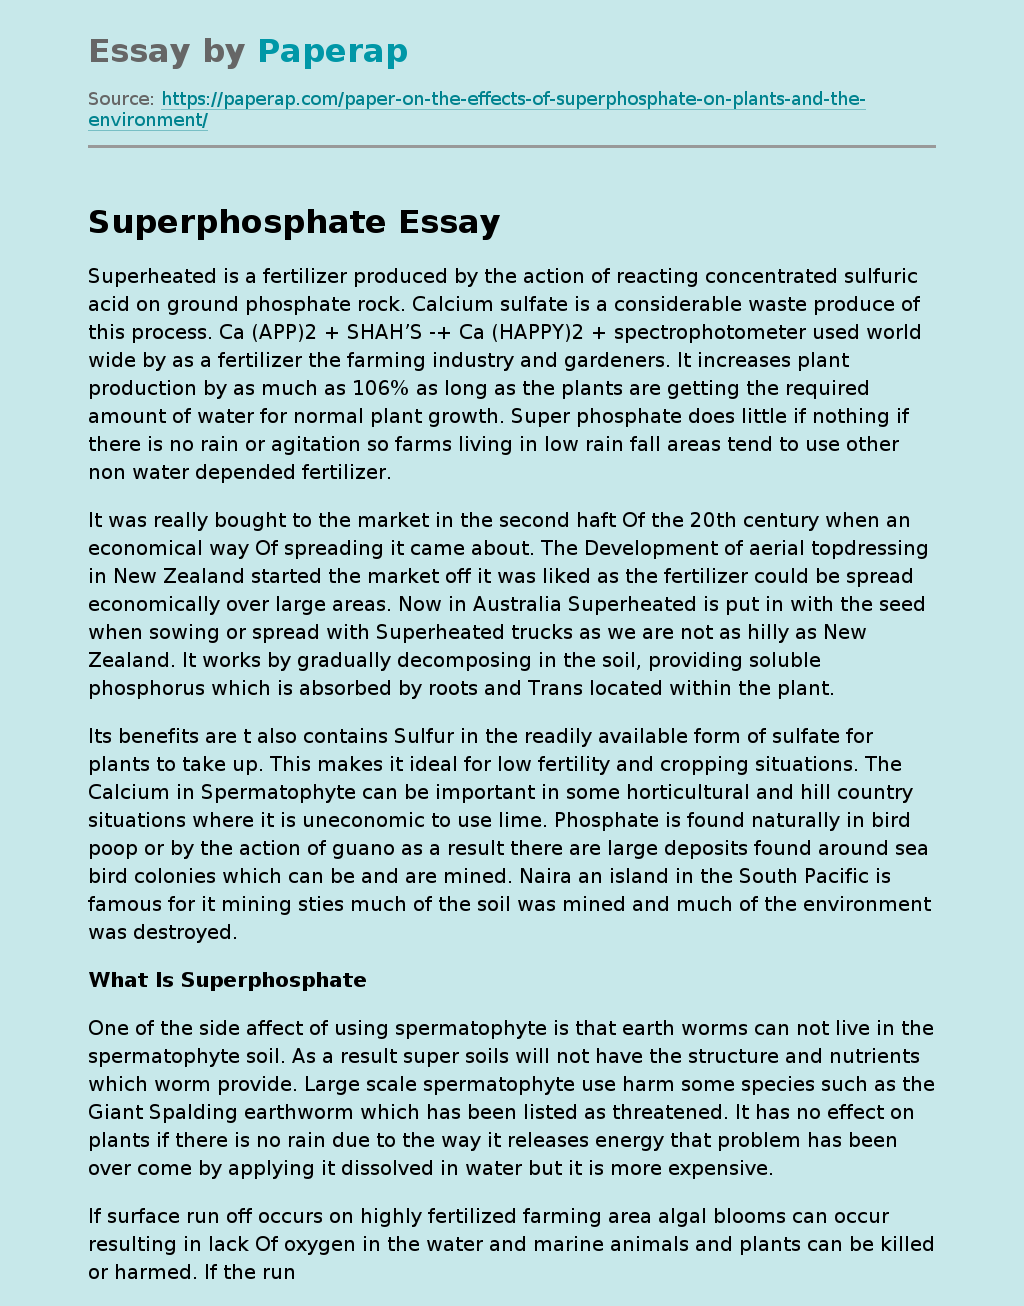 What Is Superphosphate?